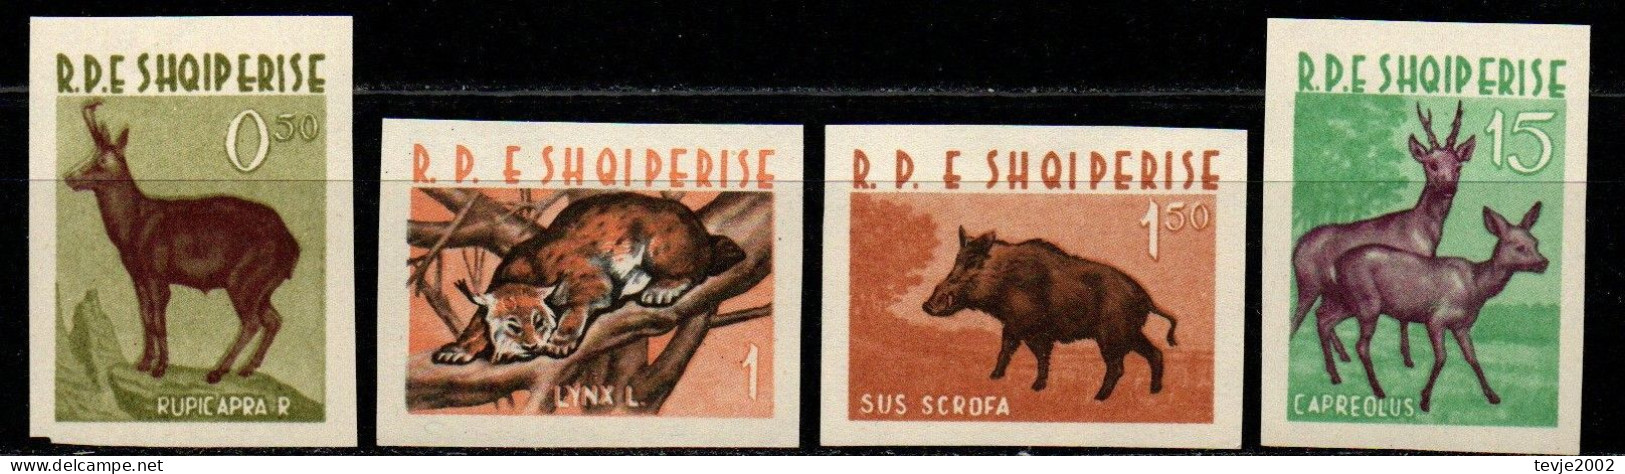 Albanien 1962 - Mi.Nr. 704 - 707 - Postfrisch MNH - Tiere Animals - Gibier